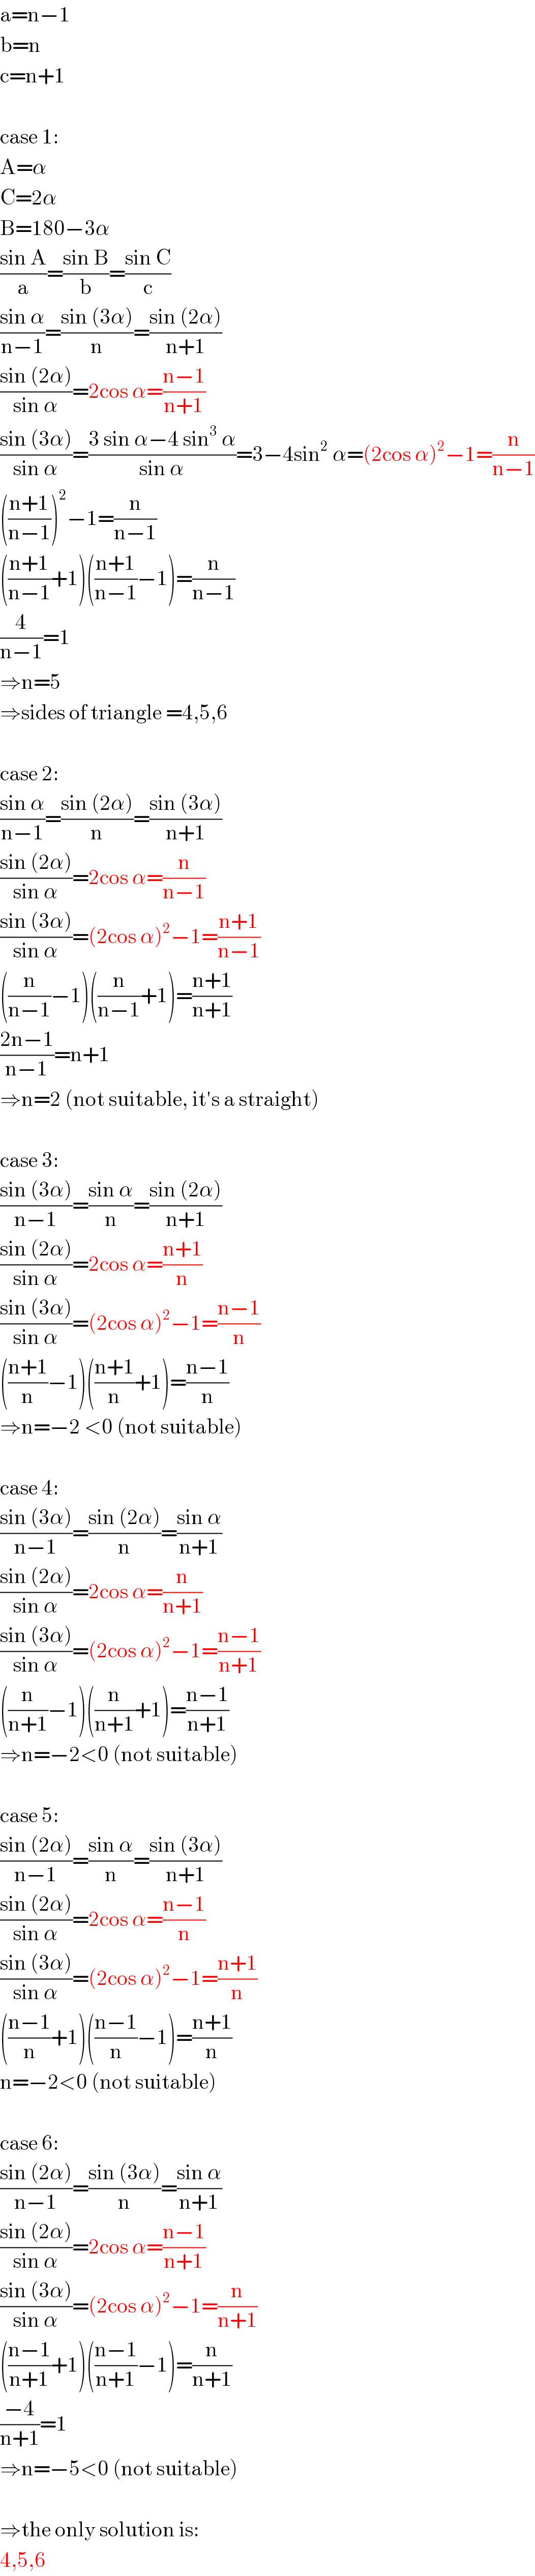 a=n−1  b=n  c=n+1    case 1:  A=α  C=2α  B=180−3α  ((sin A)/a)=((sin B)/b)=((sin C)/c)  ((sin α)/(n−1))=((sin (3α))/n)=((sin (2α))/(n+1))  ((sin (2α))/(sin α))=2cos α=((n−1)/(n+1))  ((sin (3α))/(sin α))=((3 sin α−4 sin^3  α)/(sin α))=3−4sin^2  α=(2cos α)^2 −1=(n/(n−1))  (((n+1)/(n−1)))^2 −1=(n/(n−1))  (((n+1)/(n−1))+1)(((n+1)/(n−1))−1)=(n/(n−1))  (4/(n−1))=1  ⇒n=5  ⇒sides of triangle =4,5,6    case 2:  ((sin α)/(n−1))=((sin (2α))/n)=((sin (3α))/(n+1))  ((sin (2α))/(sin α))=2cos α=(n/(n−1))  ((sin (3α))/(sin α))=(2cos α)^2 −1=((n+1)/(n−1))  ((n/(n−1))−1)((n/(n−1))+1)=((n+1)/(n+1))  ((2n−1)/(n−1))=n+1  ⇒n=2 (not suitable, it′s a straight)    case 3:  ((sin (3α))/(n−1))=((sin α)/n)=((sin (2α))/(n+1))  ((sin (2α))/(sin α))=2cos α=((n+1)/n)  ((sin (3α))/(sin α))=(2cos α)^2 −1=((n−1)/n)  (((n+1)/n)−1)(((n+1)/n)+1)=((n−1)/n)  ⇒n=−2 <0 (not suitable)    case 4:  ((sin (3α))/(n−1))=((sin (2α))/n)=((sin α)/(n+1))  ((sin (2α))/(sin α))=2cos α=(n/(n+1))  ((sin (3α))/(sin α))=(2cos α)^2 −1=((n−1)/(n+1))  ((n/(n+1))−1)((n/(n+1))+1)=((n−1)/(n+1))  ⇒n=−2<0 (not suitable)    case 5:  ((sin (2α))/(n−1))=((sin α)/n)=((sin (3α))/(n+1))  ((sin (2α))/(sin α))=2cos α=((n−1)/n)  ((sin (3α))/(sin α))=(2cos α)^2 −1=((n+1)/n)  (((n−1)/n)+1)(((n−1)/n)−1)=((n+1)/n)  n=−2<0 (not suitable)    case 6:  ((sin (2α))/(n−1))=((sin (3α))/n)=((sin α)/(n+1))  ((sin (2α))/(sin α))=2cos α=((n−1)/(n+1))  ((sin (3α))/(sin α))=(2cos α)^2 −1=(n/(n+1))  (((n−1)/(n+1))+1)(((n−1)/(n+1))−1)=(n/(n+1))  ((−4)/(n+1))=1  ⇒n=−5<0 (not suitable)    ⇒the only solution is:  4,5,6  